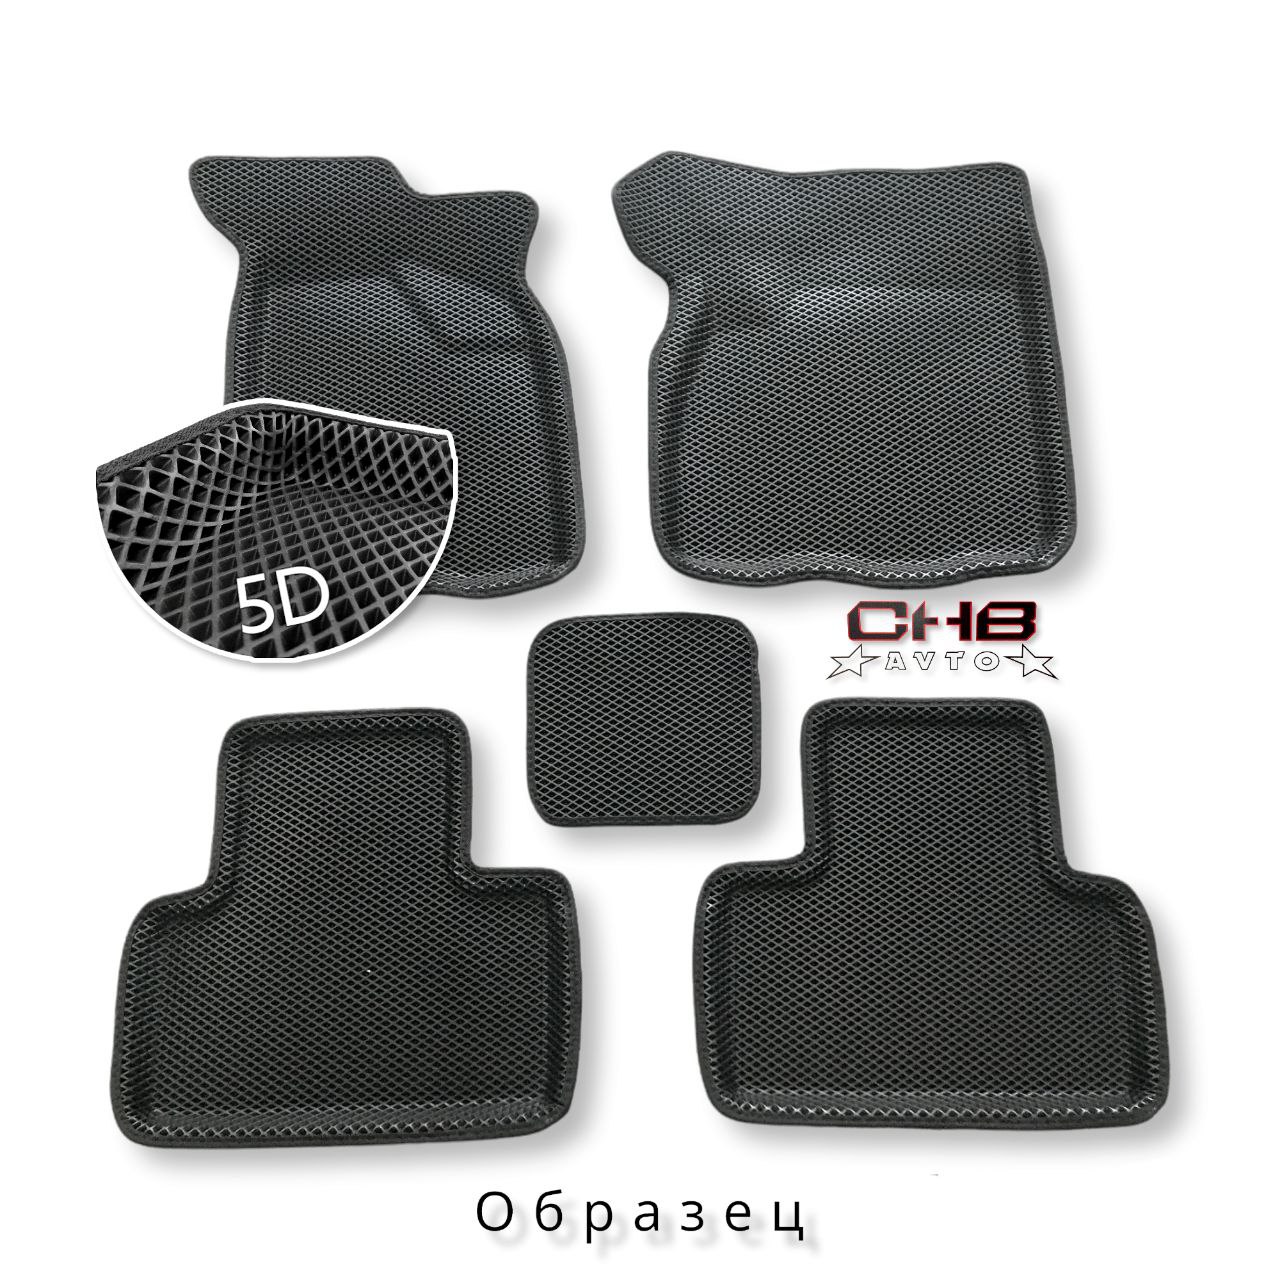 (ЕВА) Комплект полимерных 5D НАНО ковриков на VW Golf 5,6/Skoda Octavia A5, цвет ЧЁРНЫЙ/черный